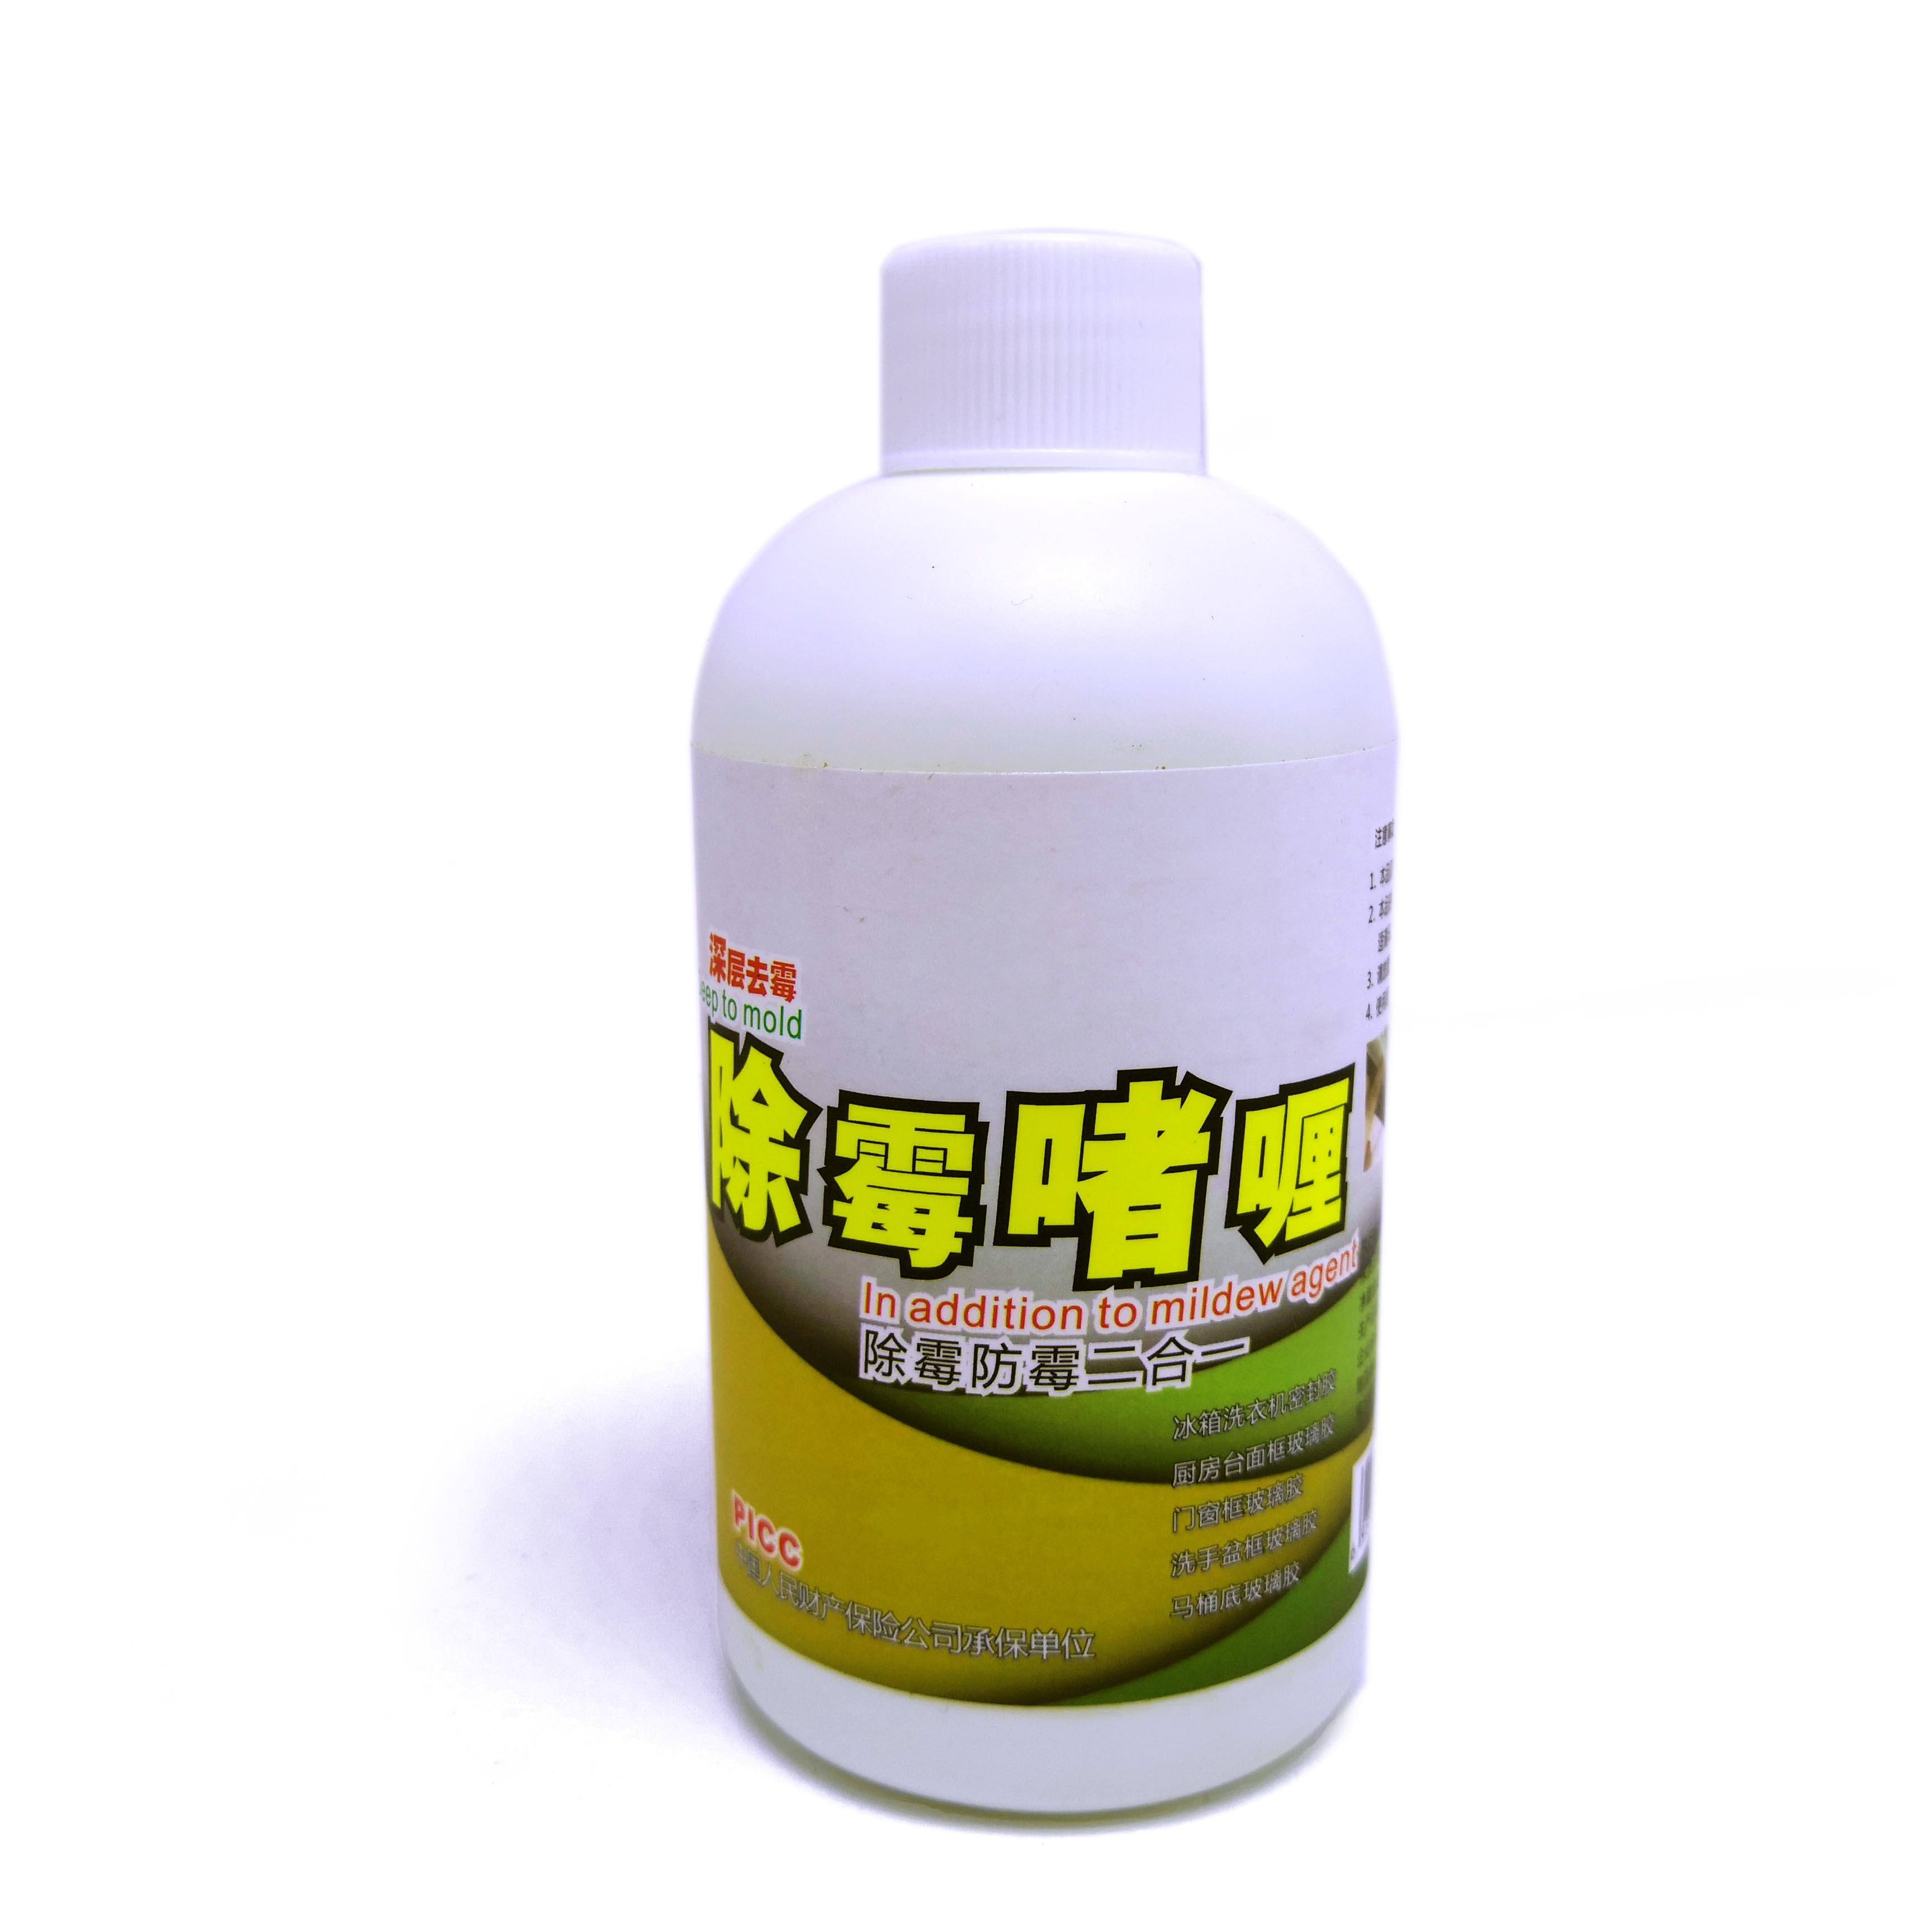 Gel detergente multisuperficie: smacchiatore per muffe per pavimenti e macchie da cucina 1 * 220 g